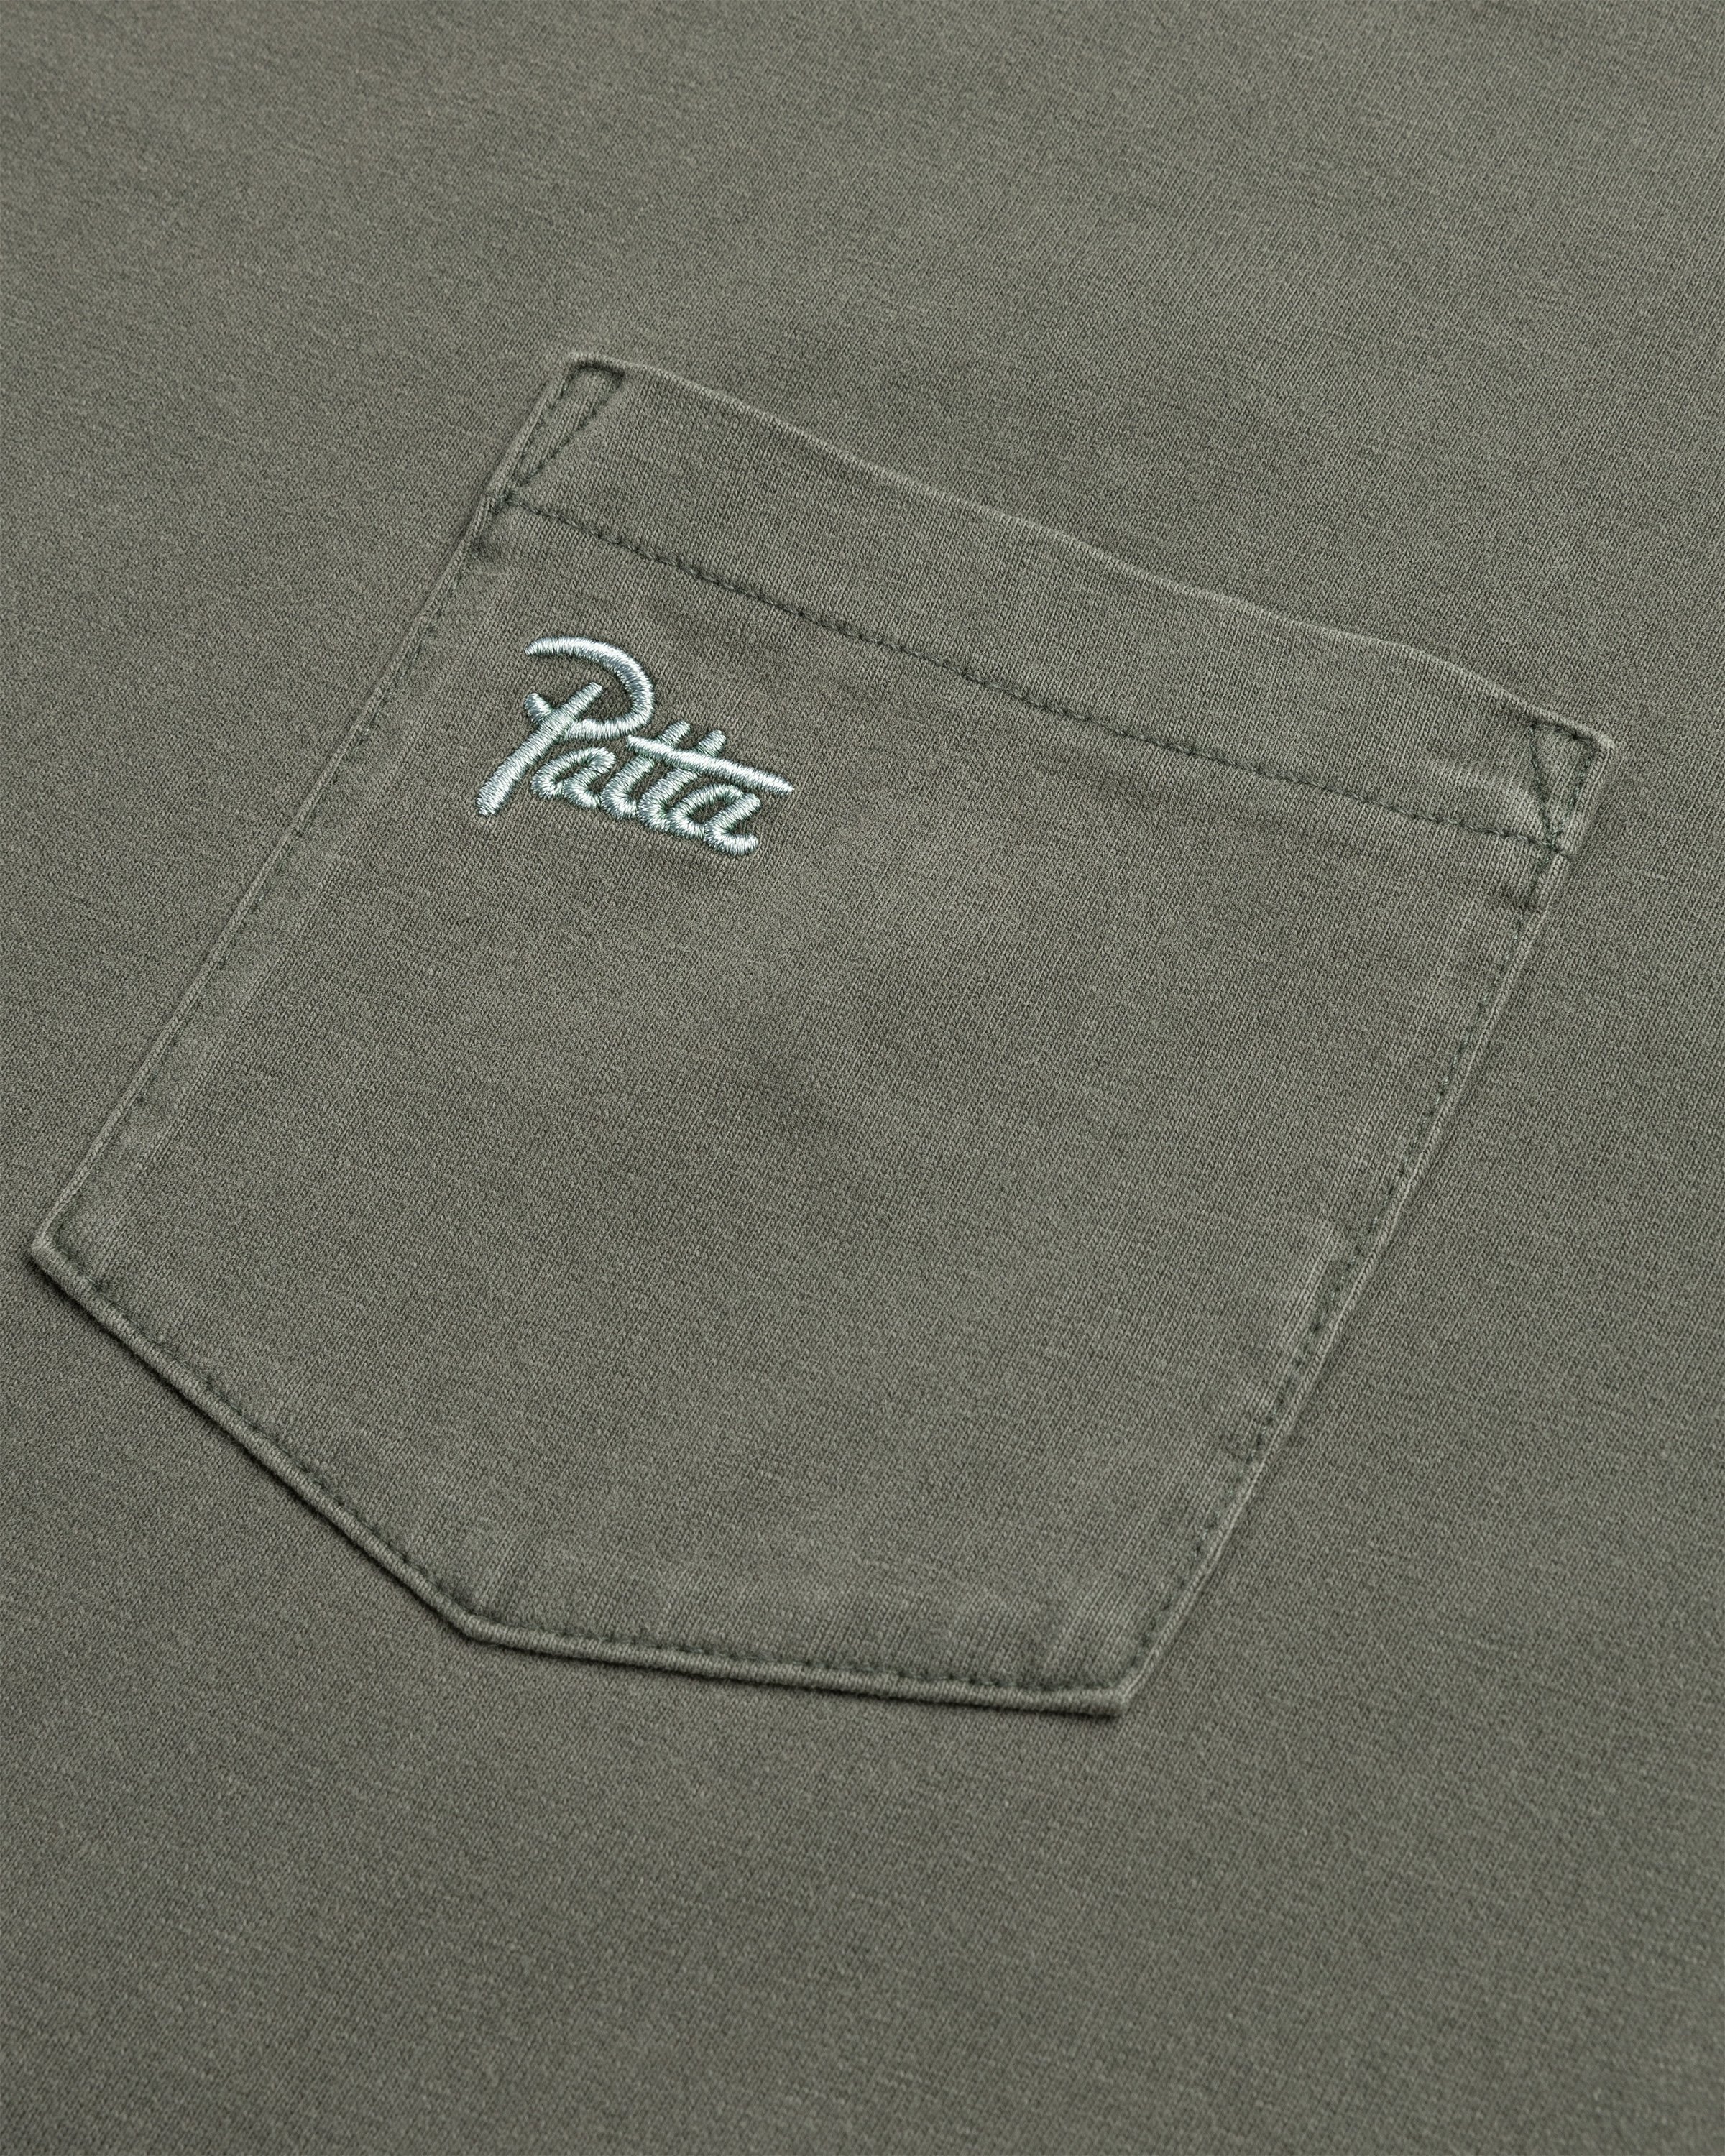 Patta - Basic Washed Pocket T-Shirt Beetle - Clothing - Green - Image 6